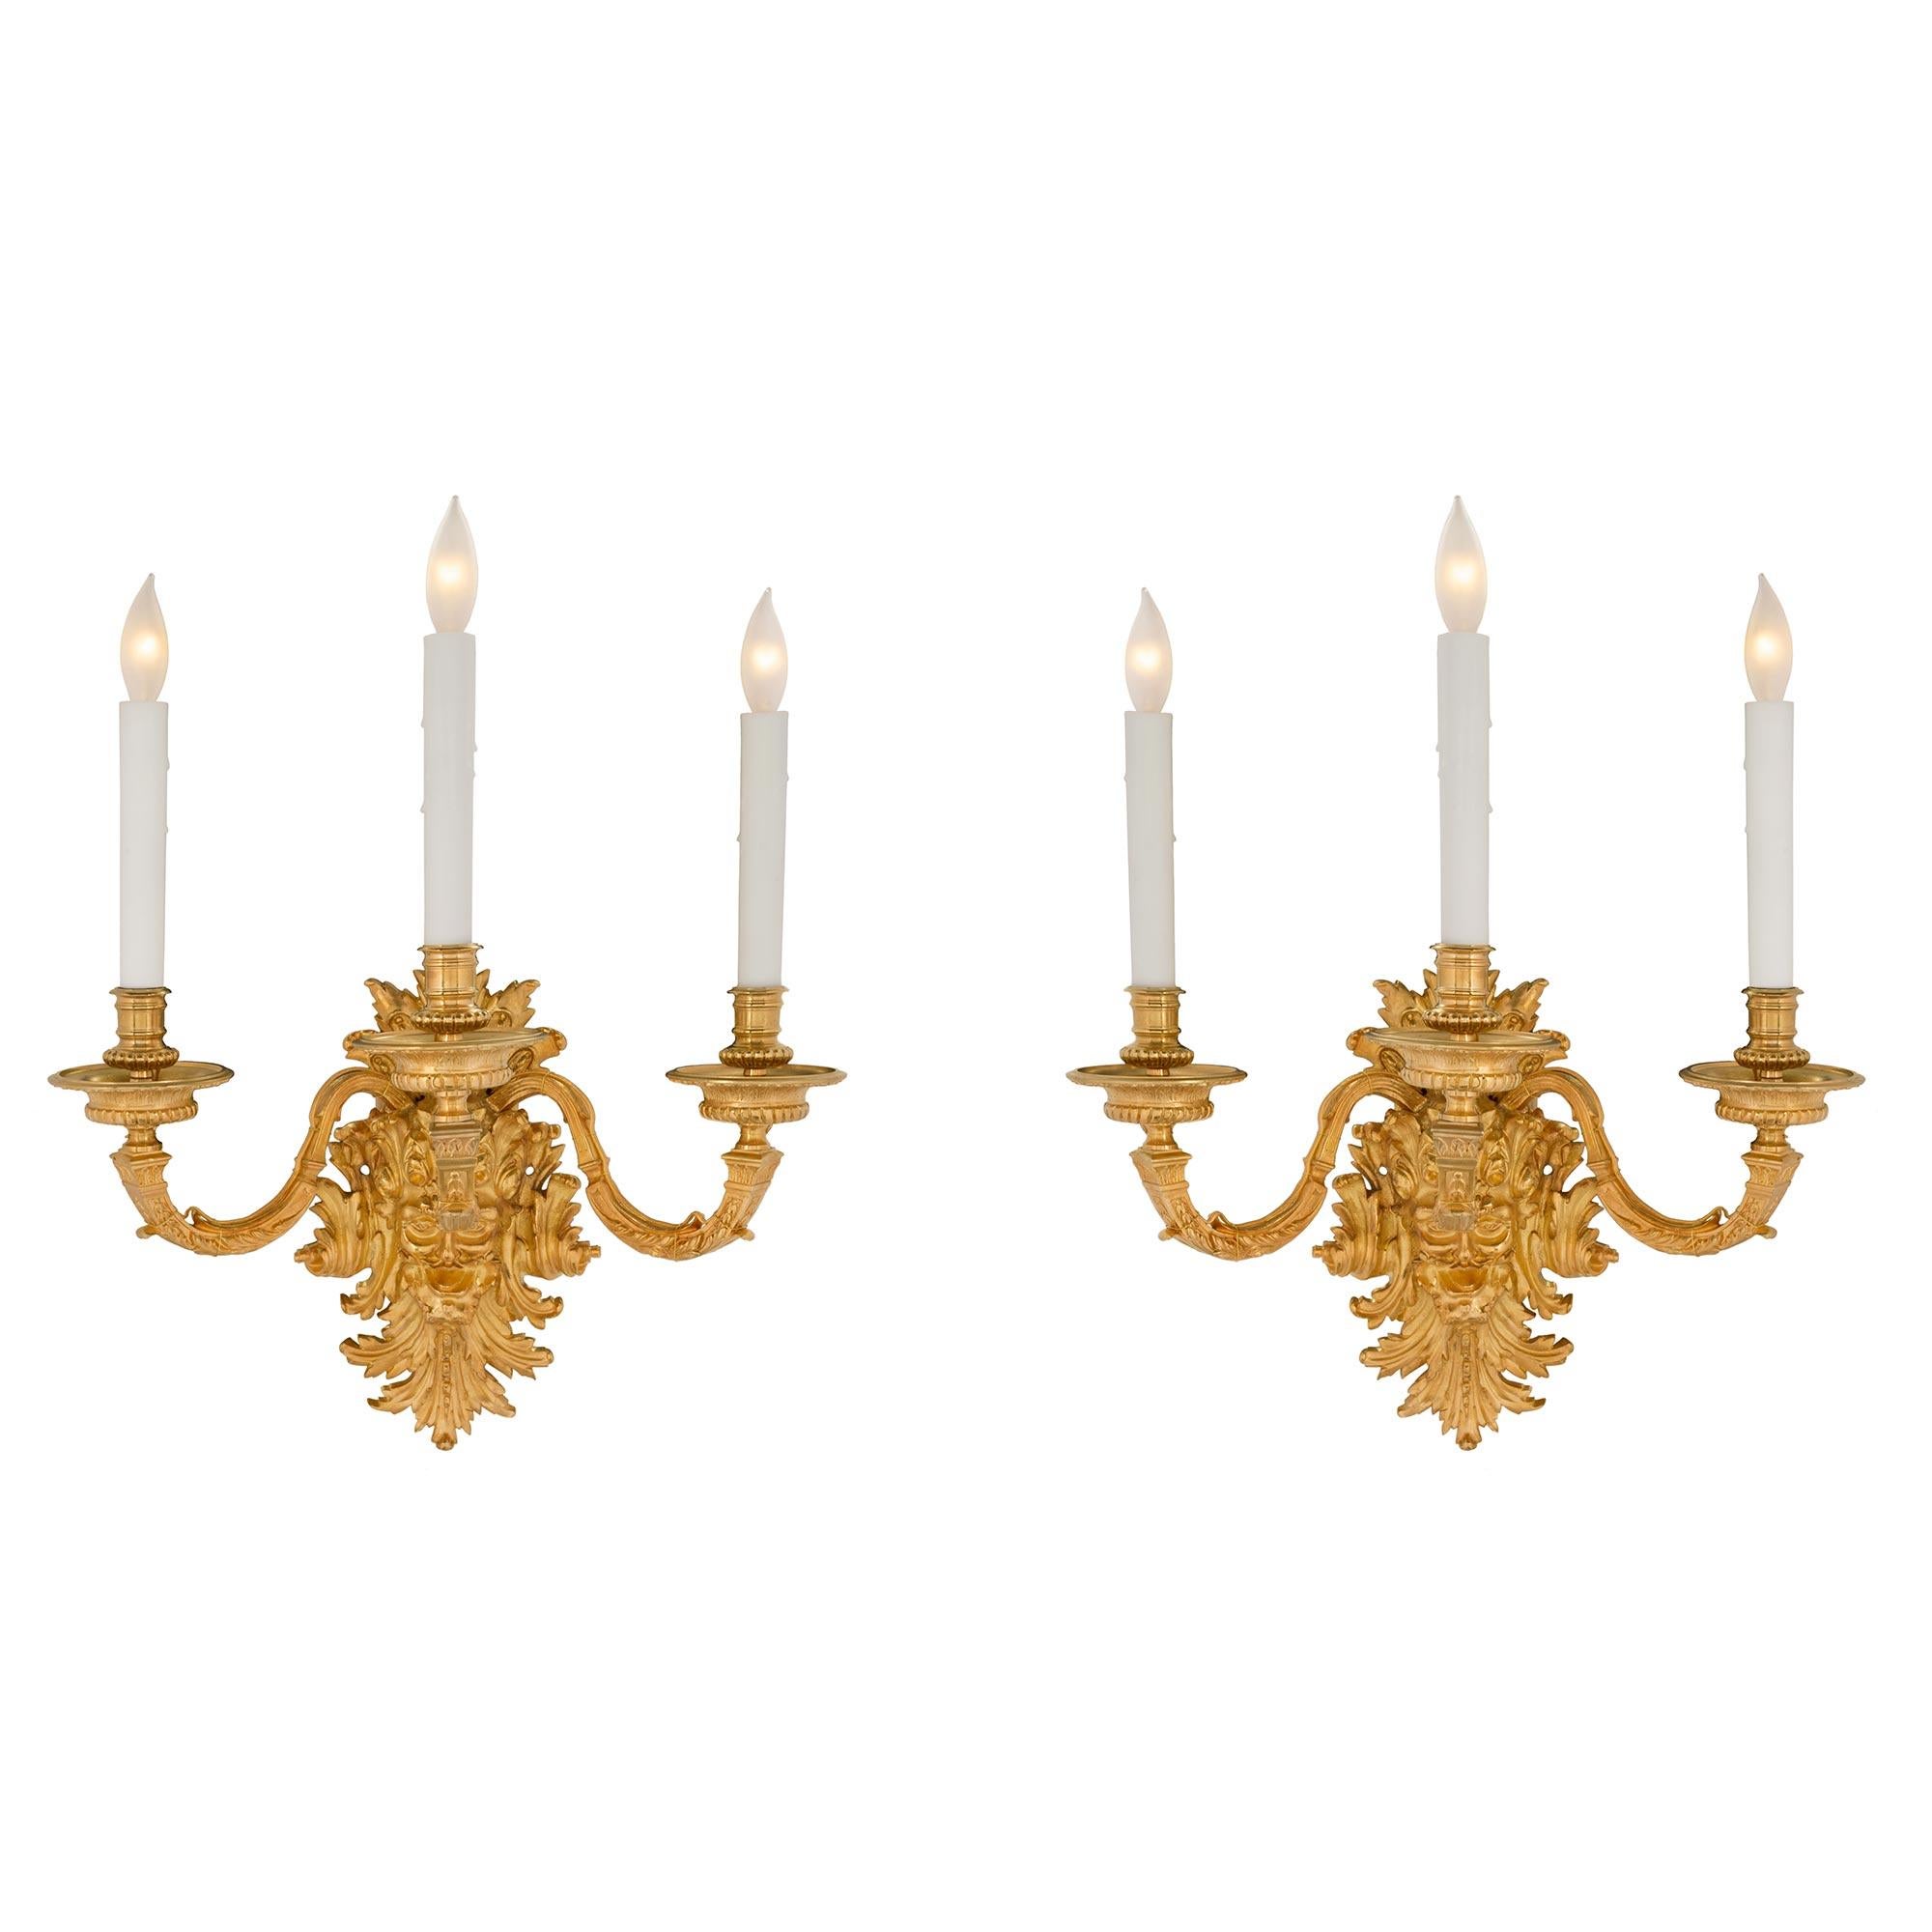 Une belle et très impressionnante paire d'appliques à trois bras de lumière en bronze doré de style Louis XIV du milieu du XIXe siècle. Les appliques ont une plaque arrière fantaisiste et très décorative avec des feuilles d'acanthe chantournées et